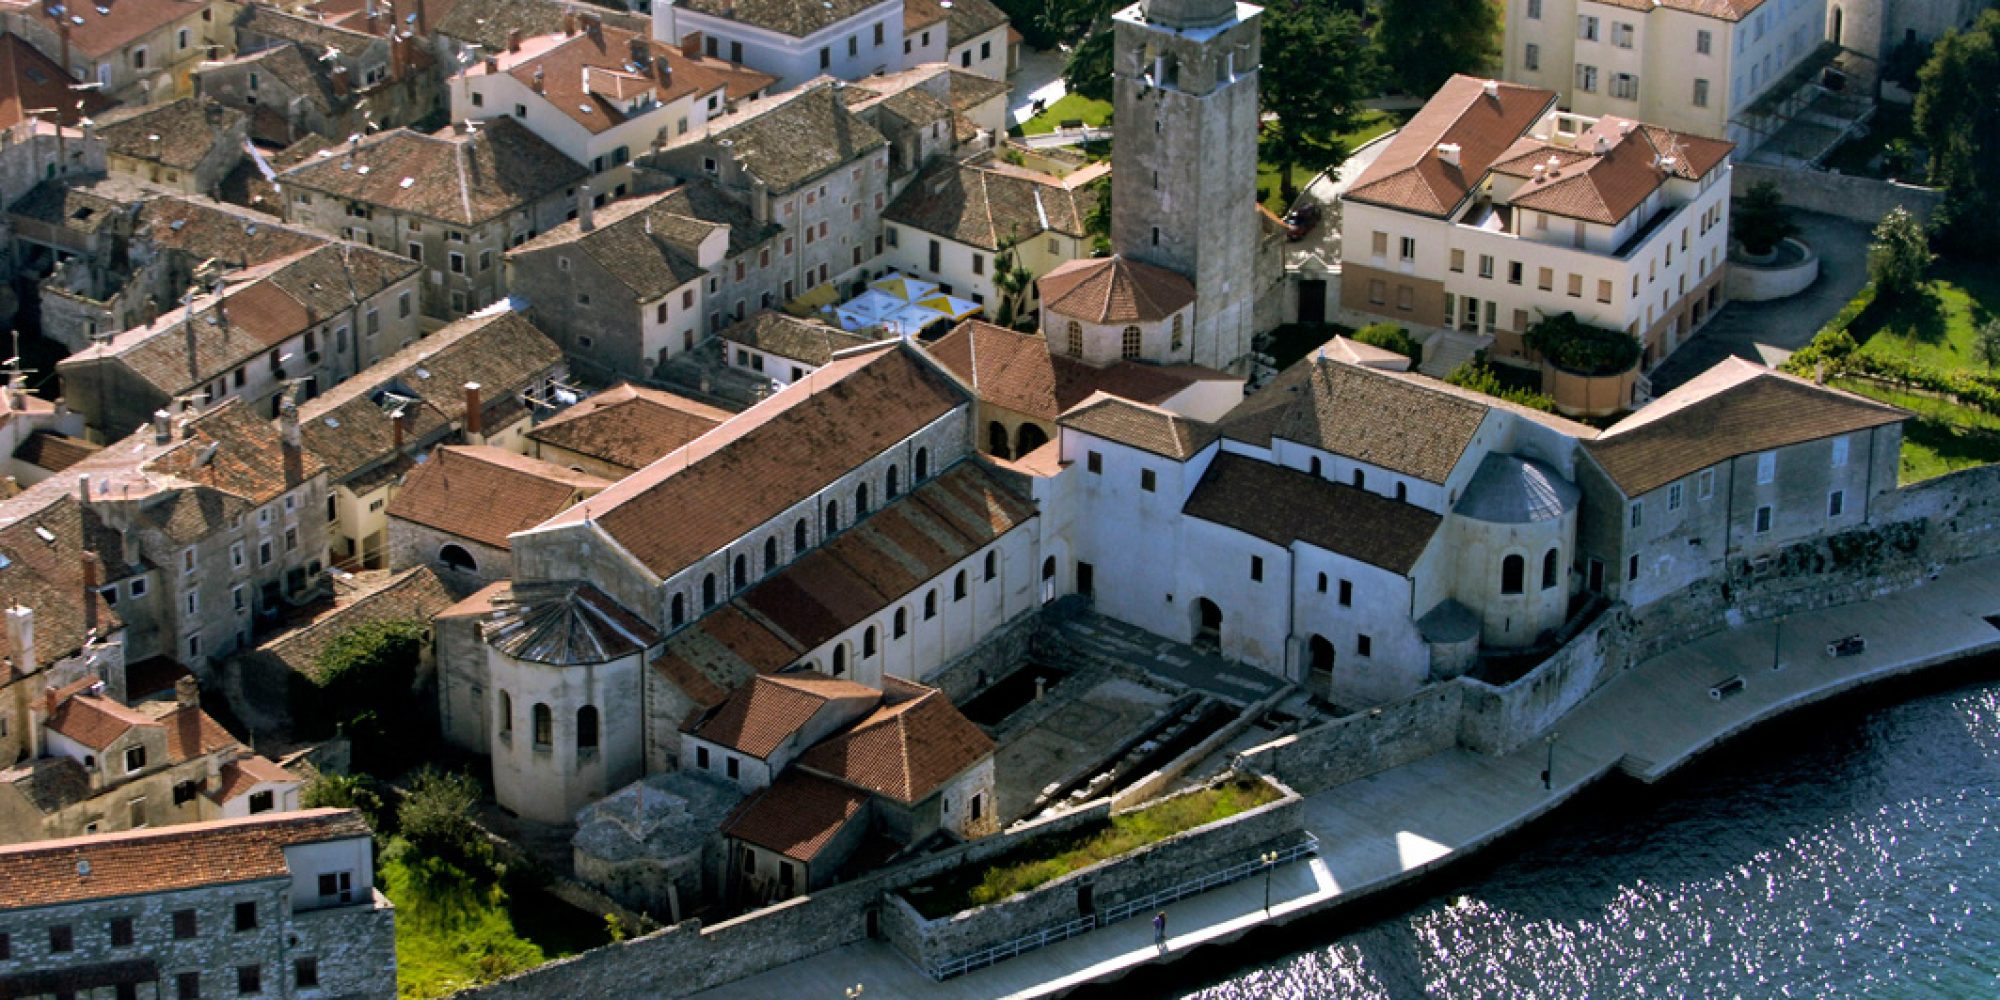 Croatia's UNESCO World Heritage sites